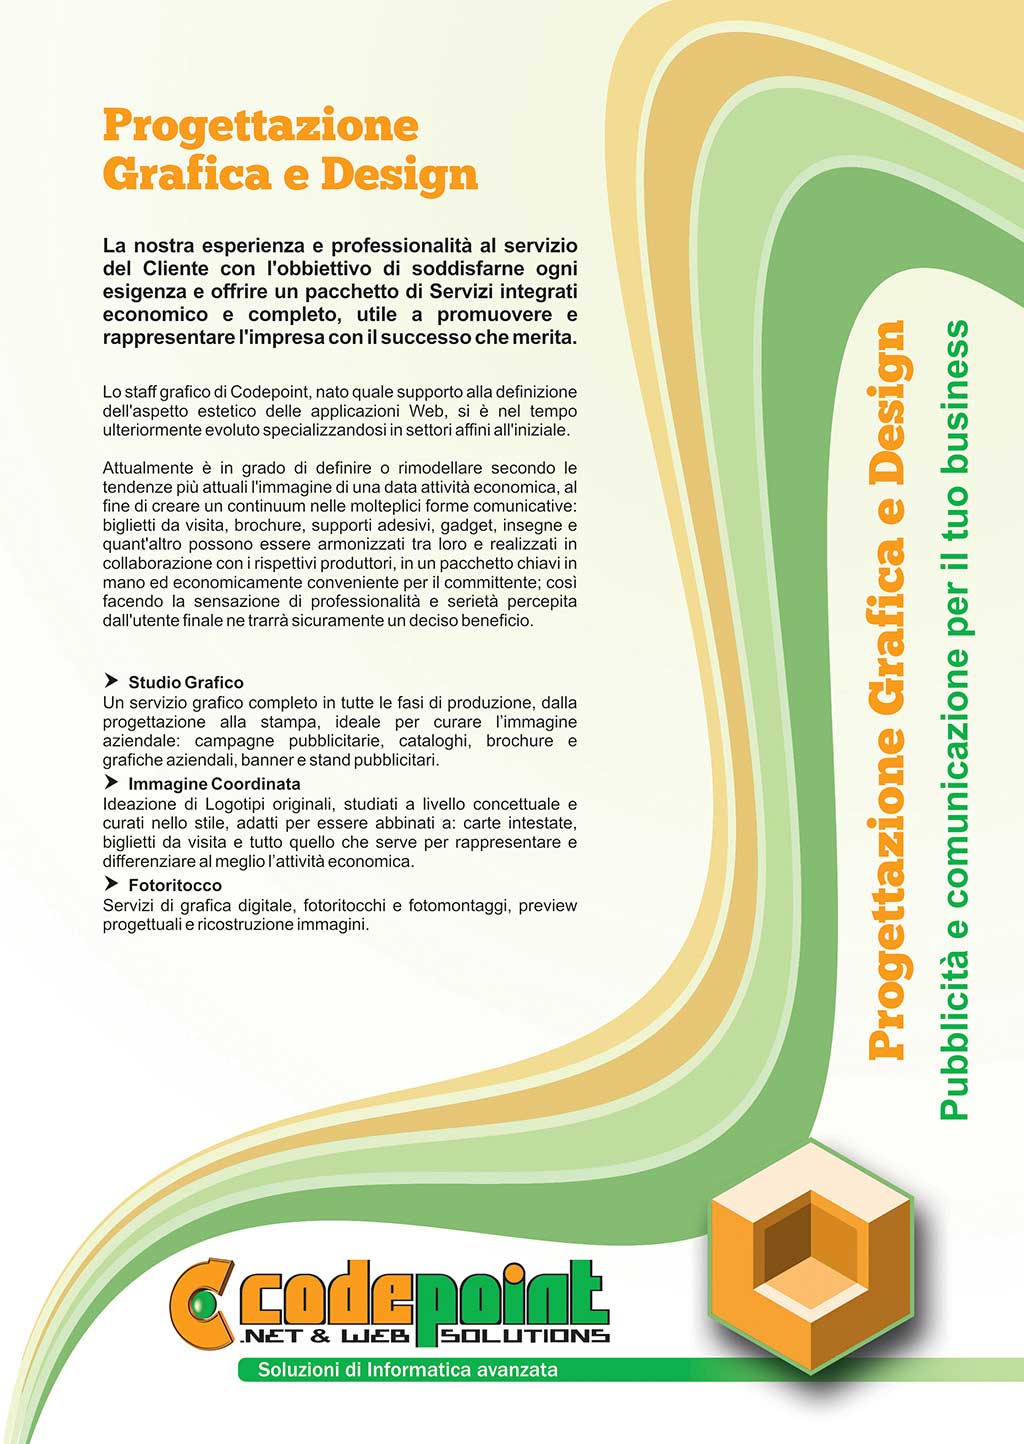 Progettazione grafica e web design Montecatini Terme Pistoia